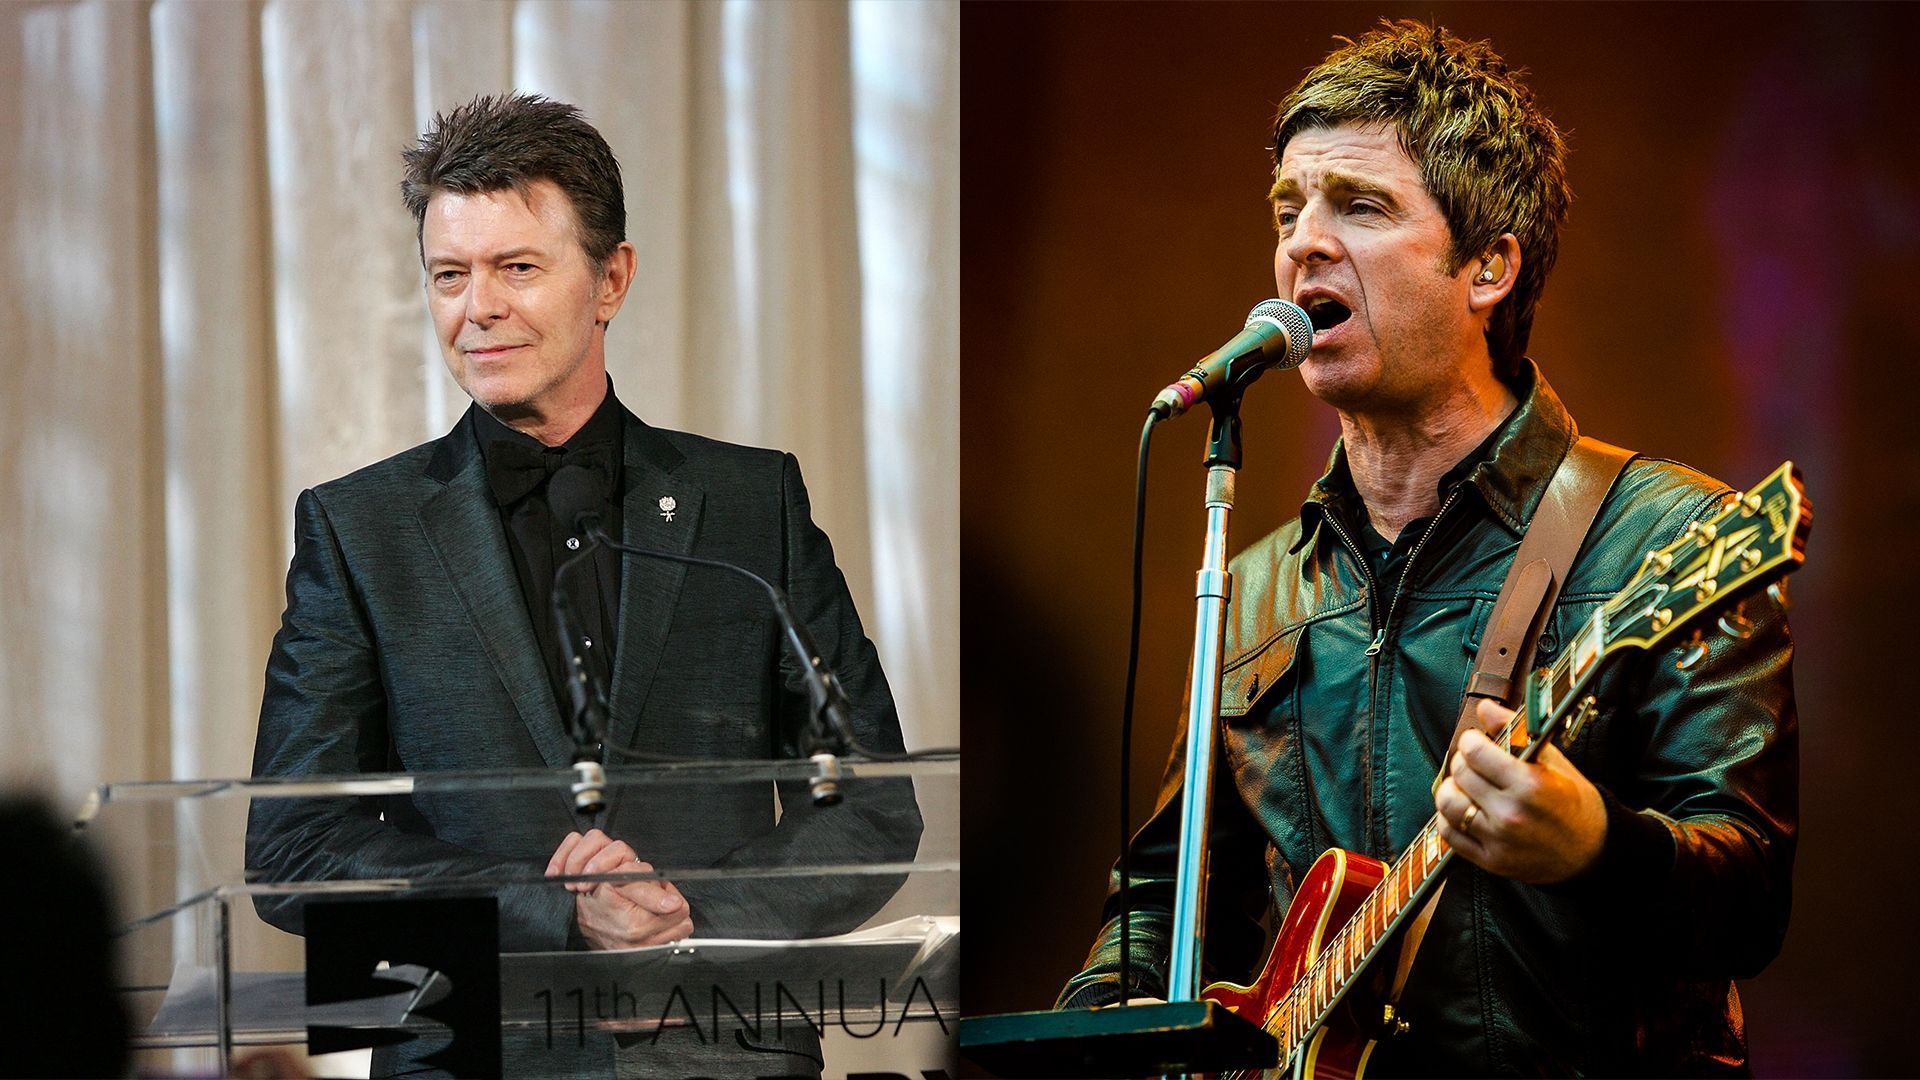 David Bowie / Noel Gallagher